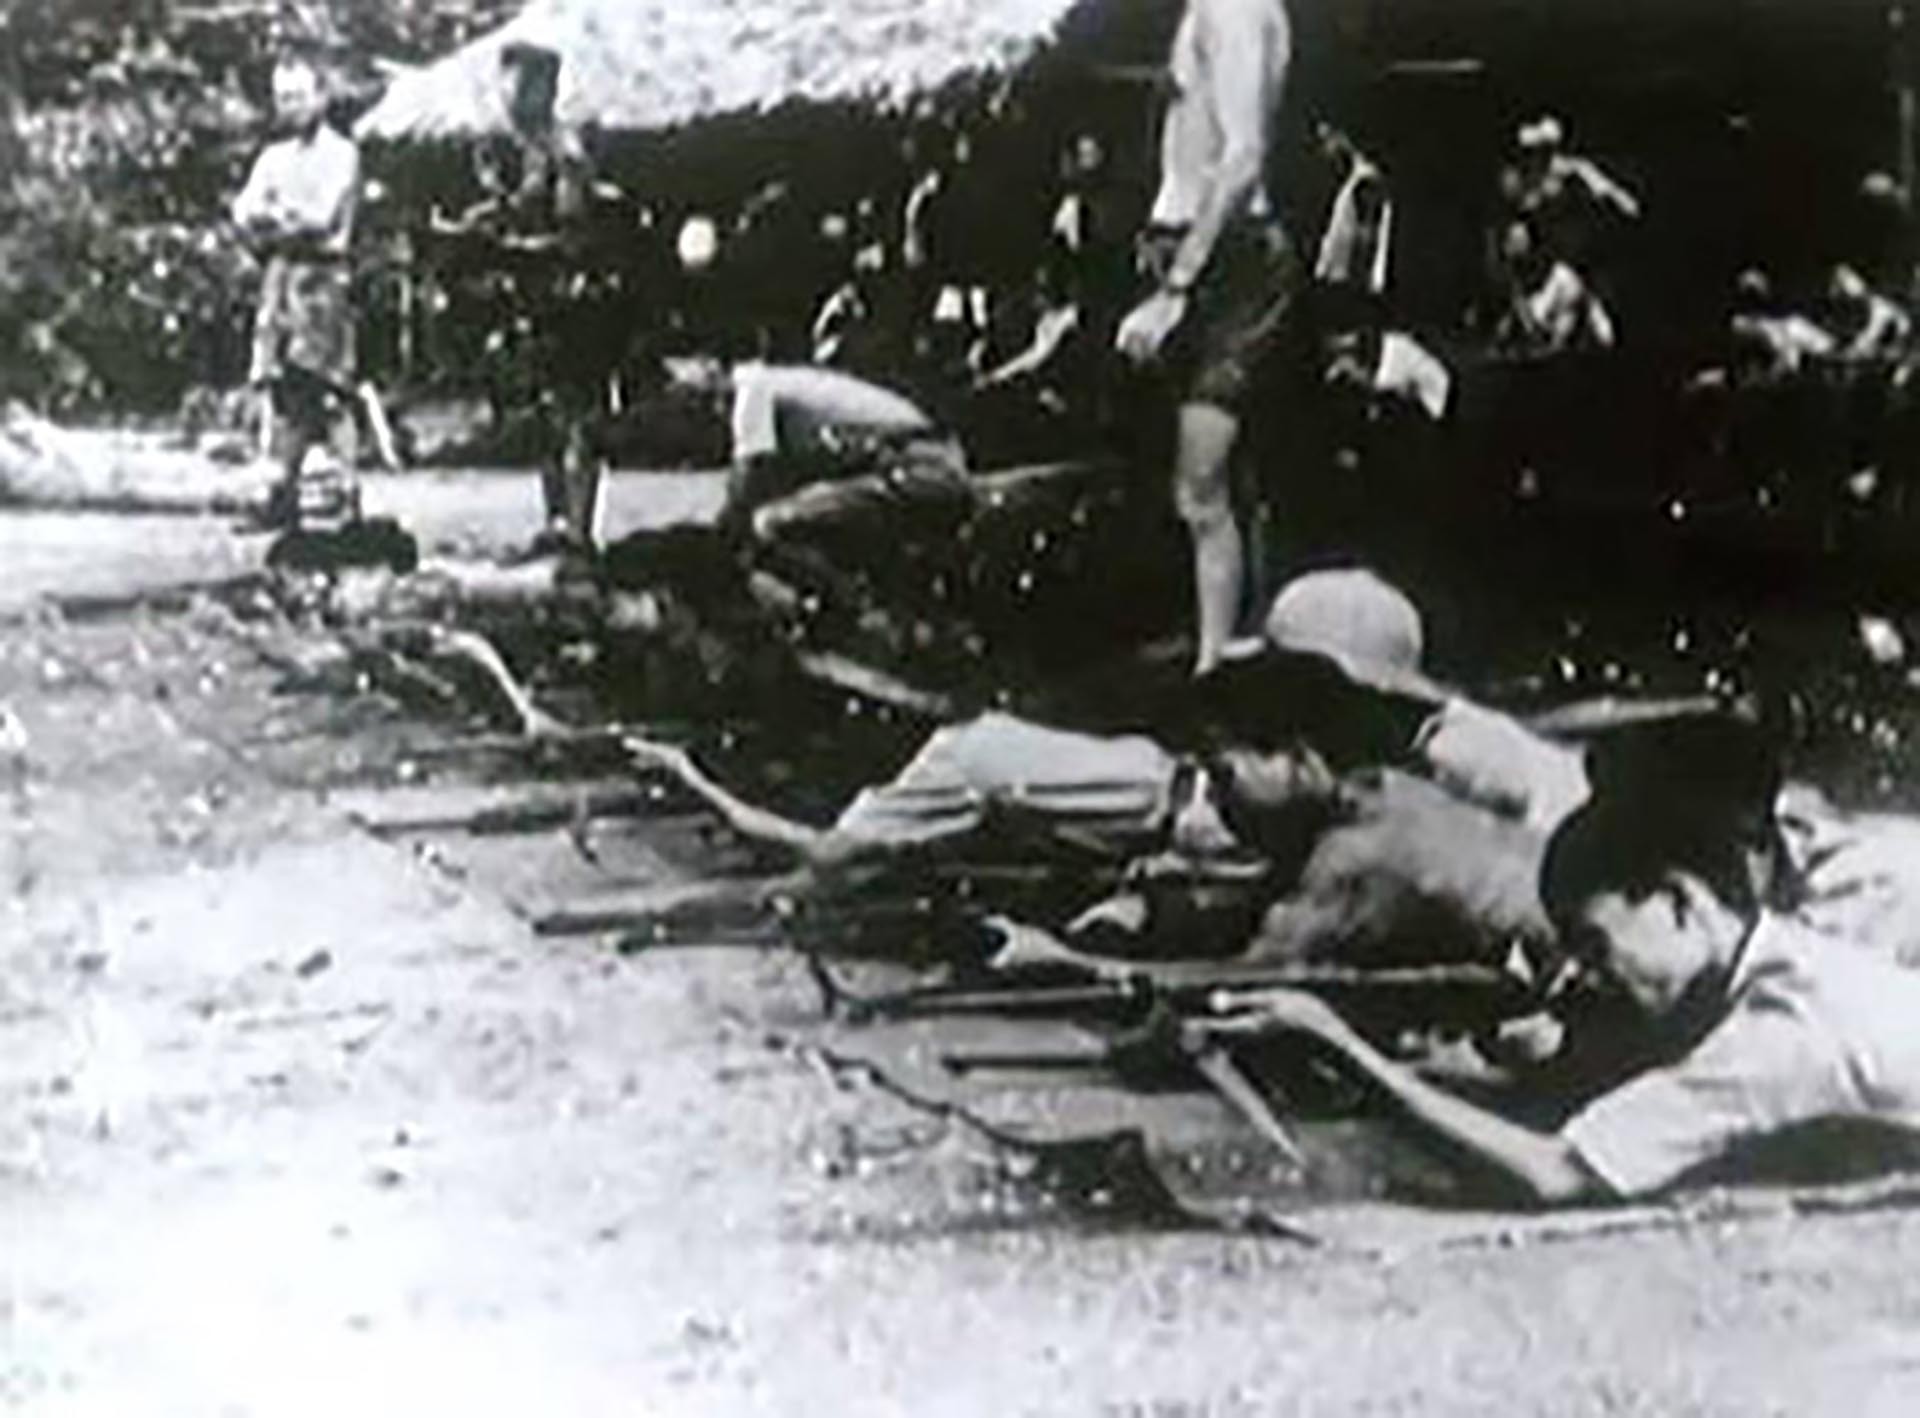 Đội Con Nai hướng dẫn Việt Minh sử dụng súng.